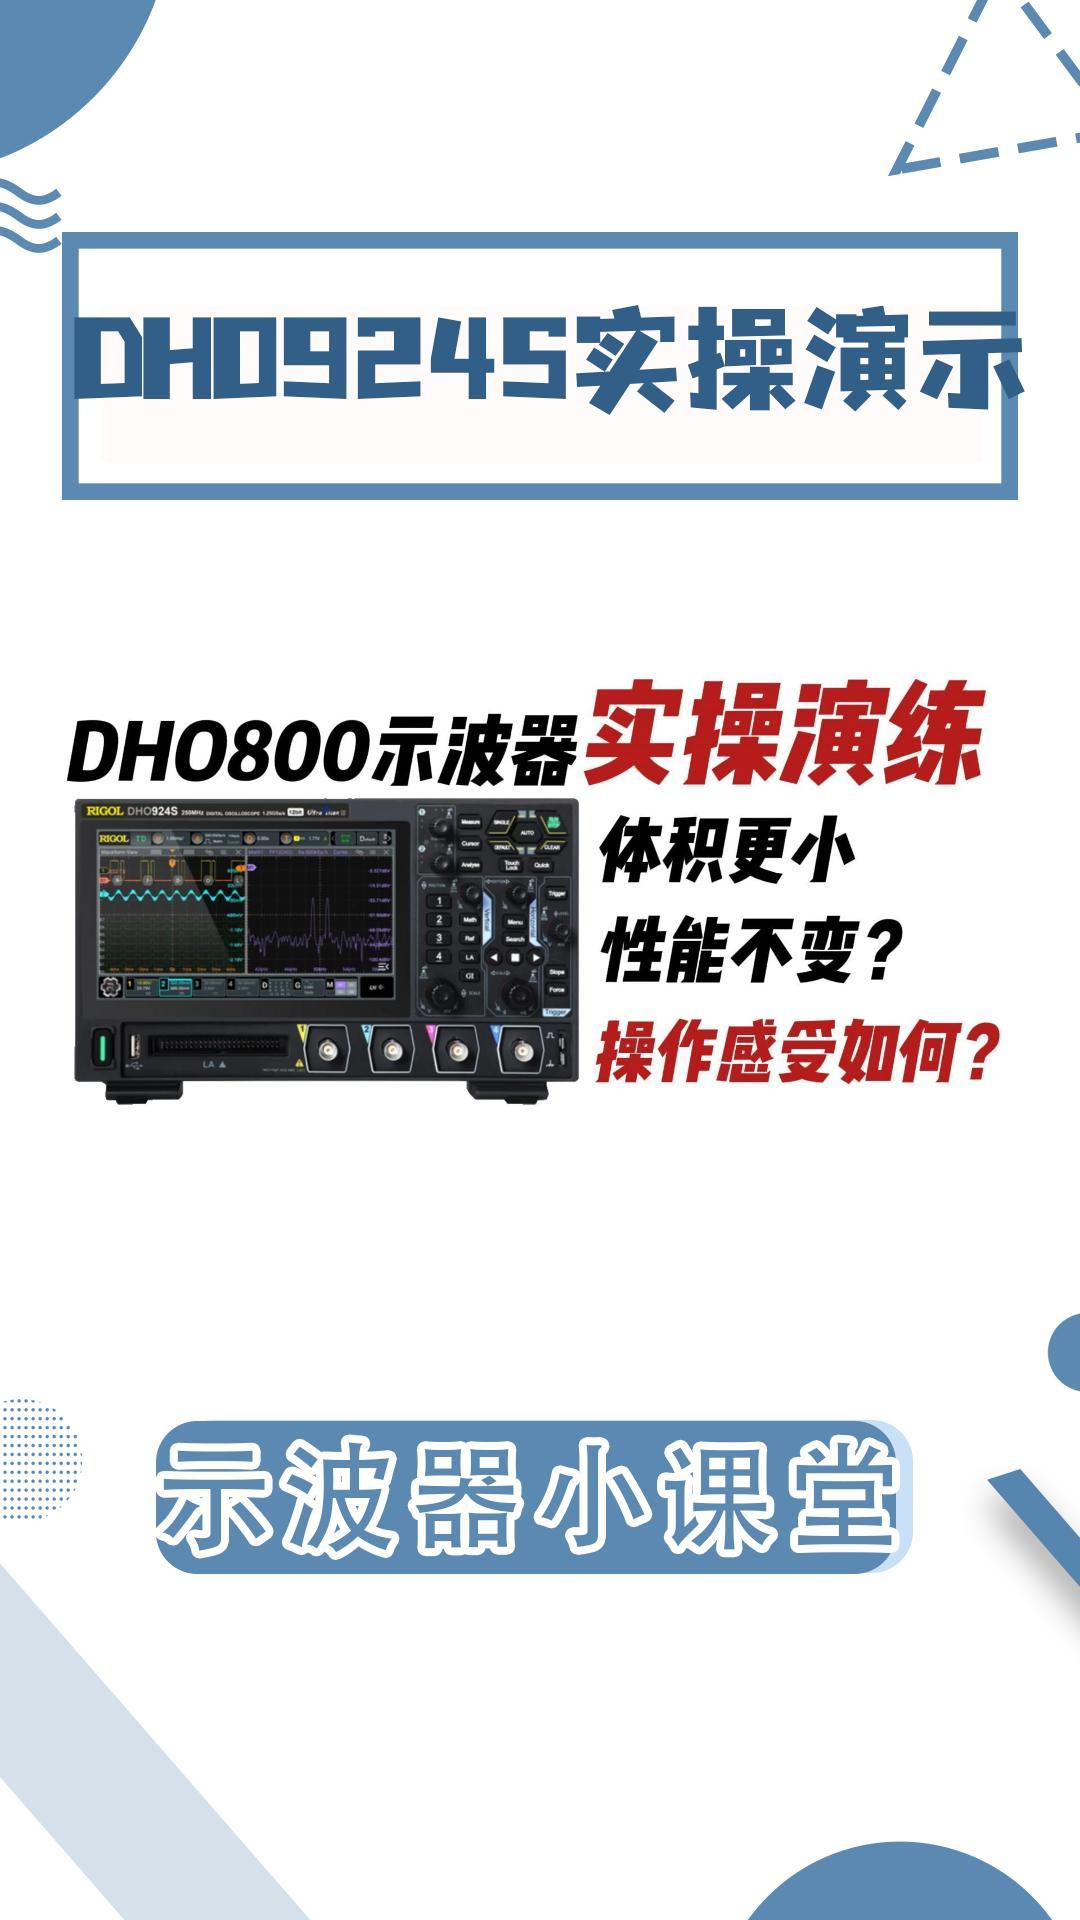 普源新品DHO924S实操体验如何?是非常丝滑还是一堆BUG#示波器 #示波器使用 #普源 #示波器FFT 